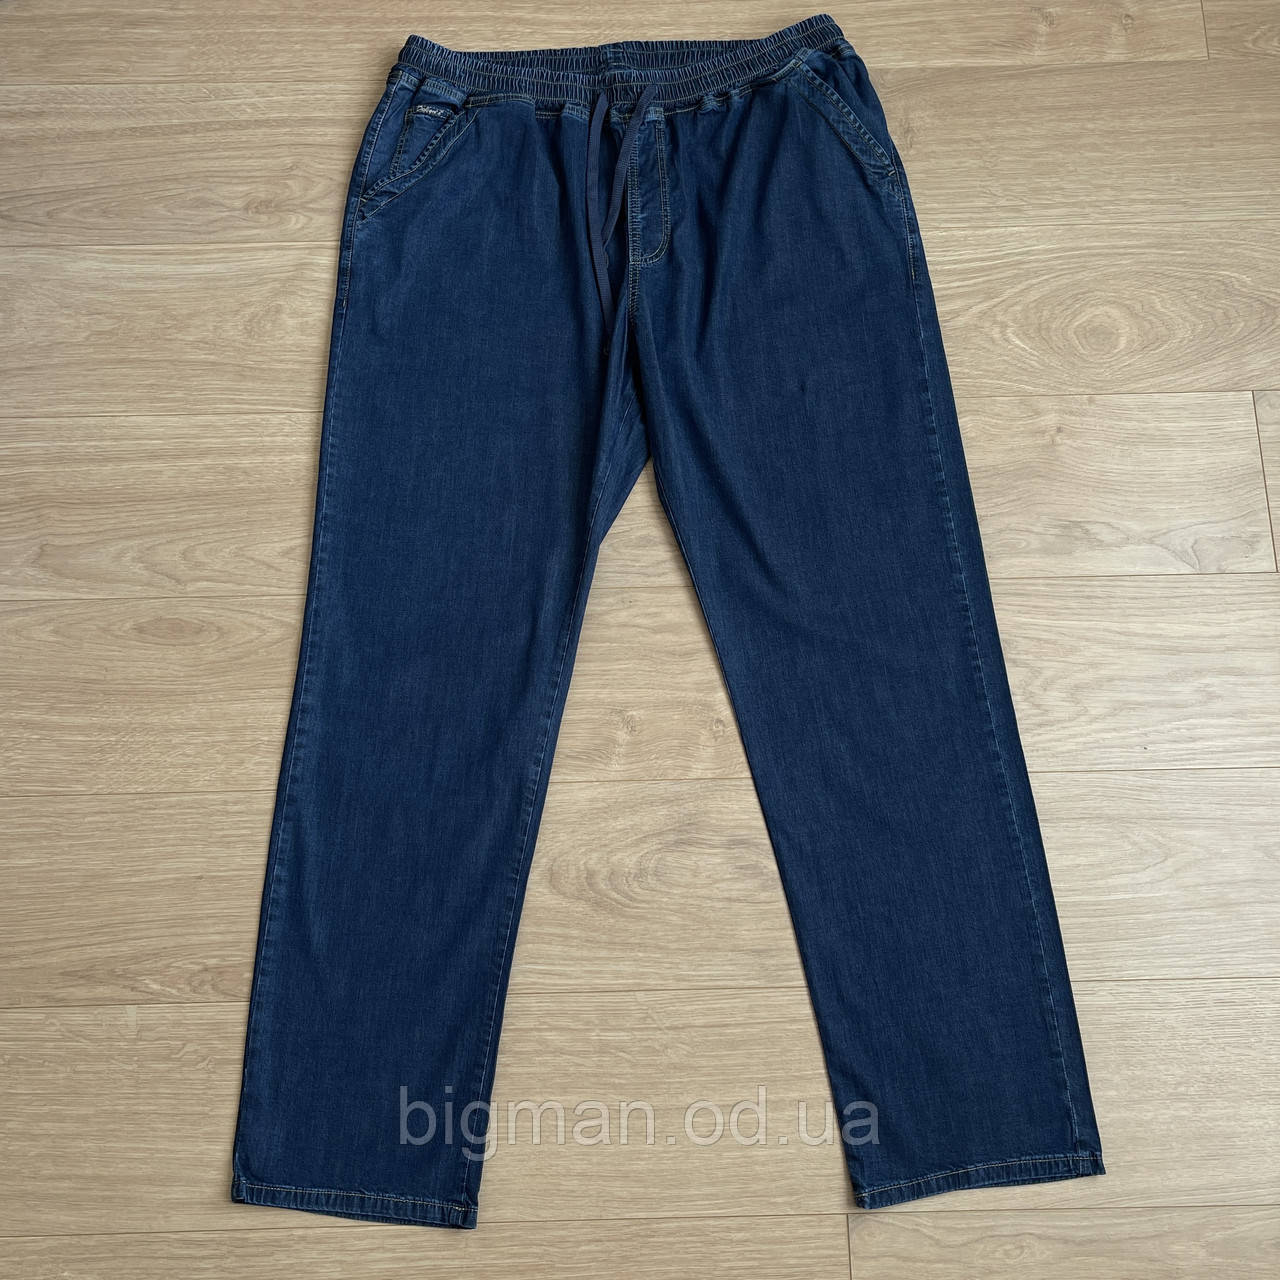 Чоловічі літні джинси на гумці Dekons 56-74 розміру великого батального розміру Туреччина